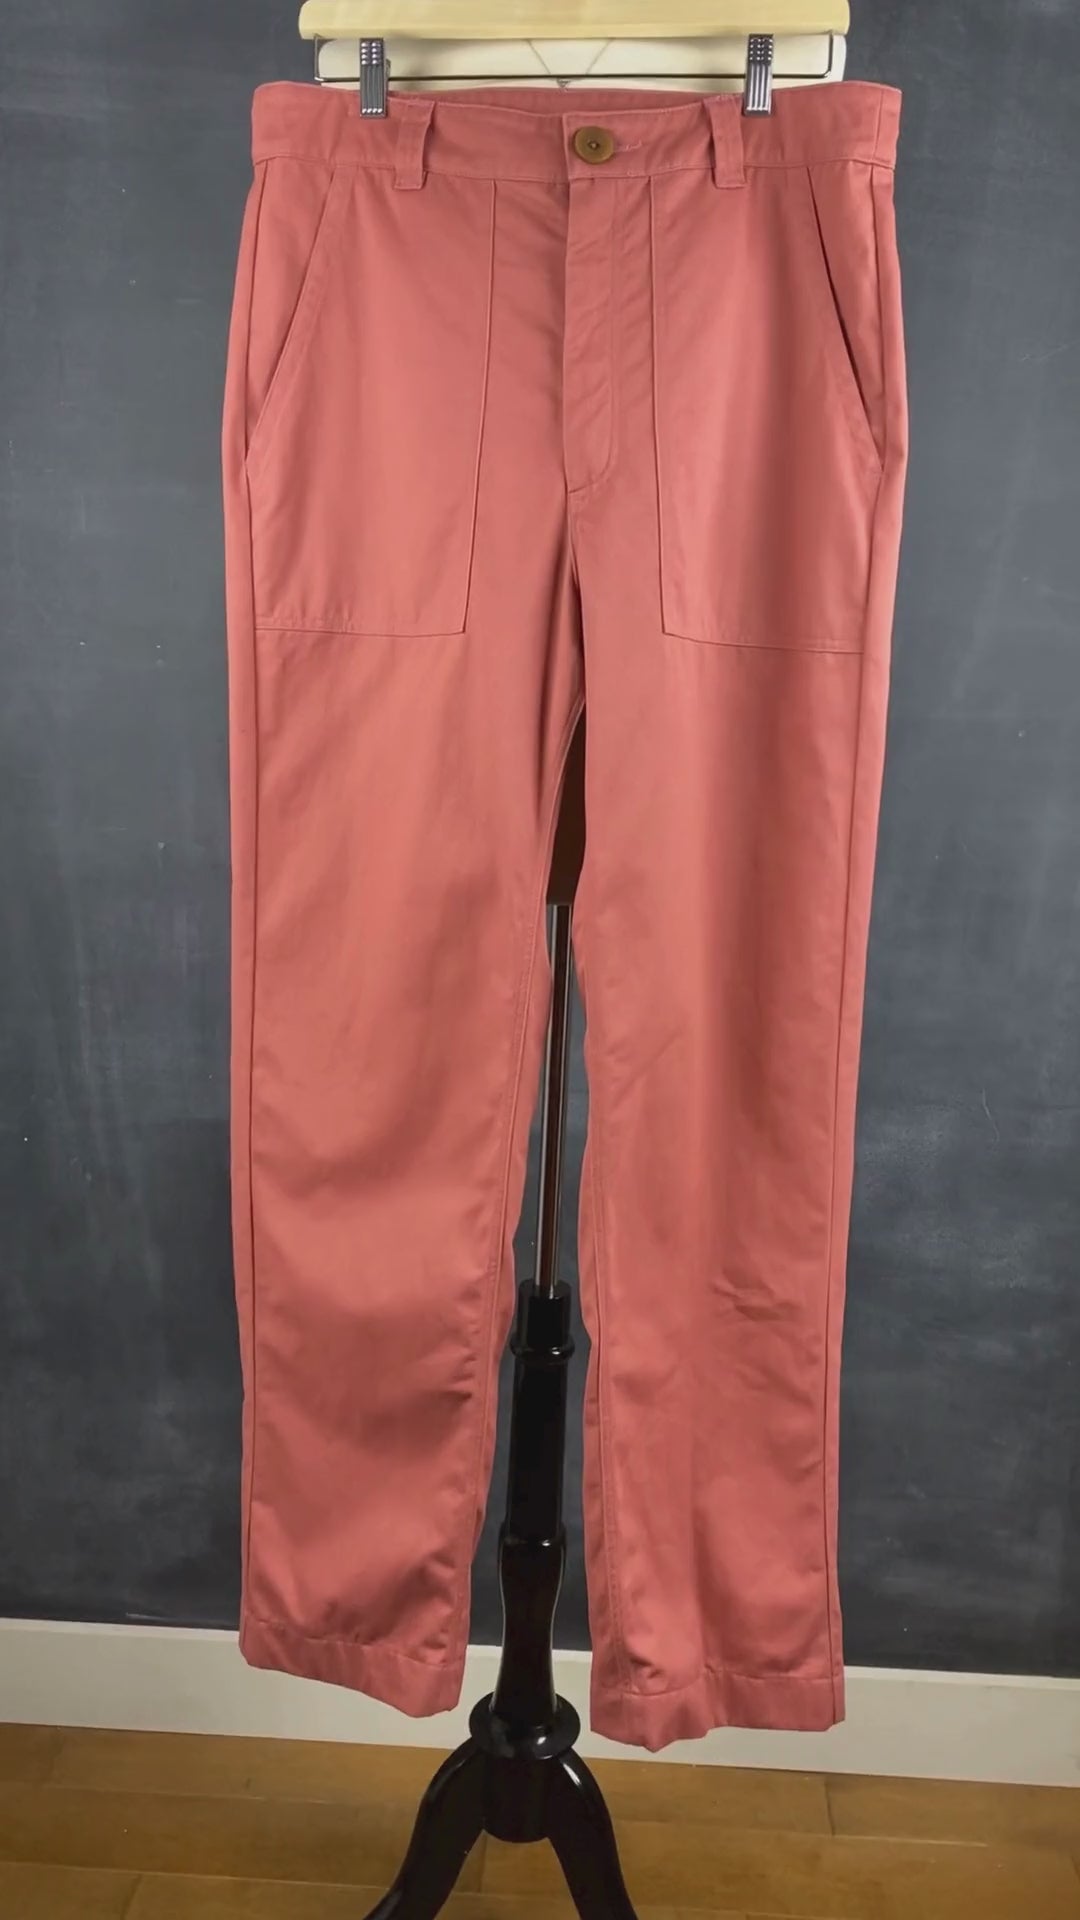 Pantalon en coton rose neuf Beaton, taille 14. Vue de la vidéo qui présente tous les détails du pantalon.